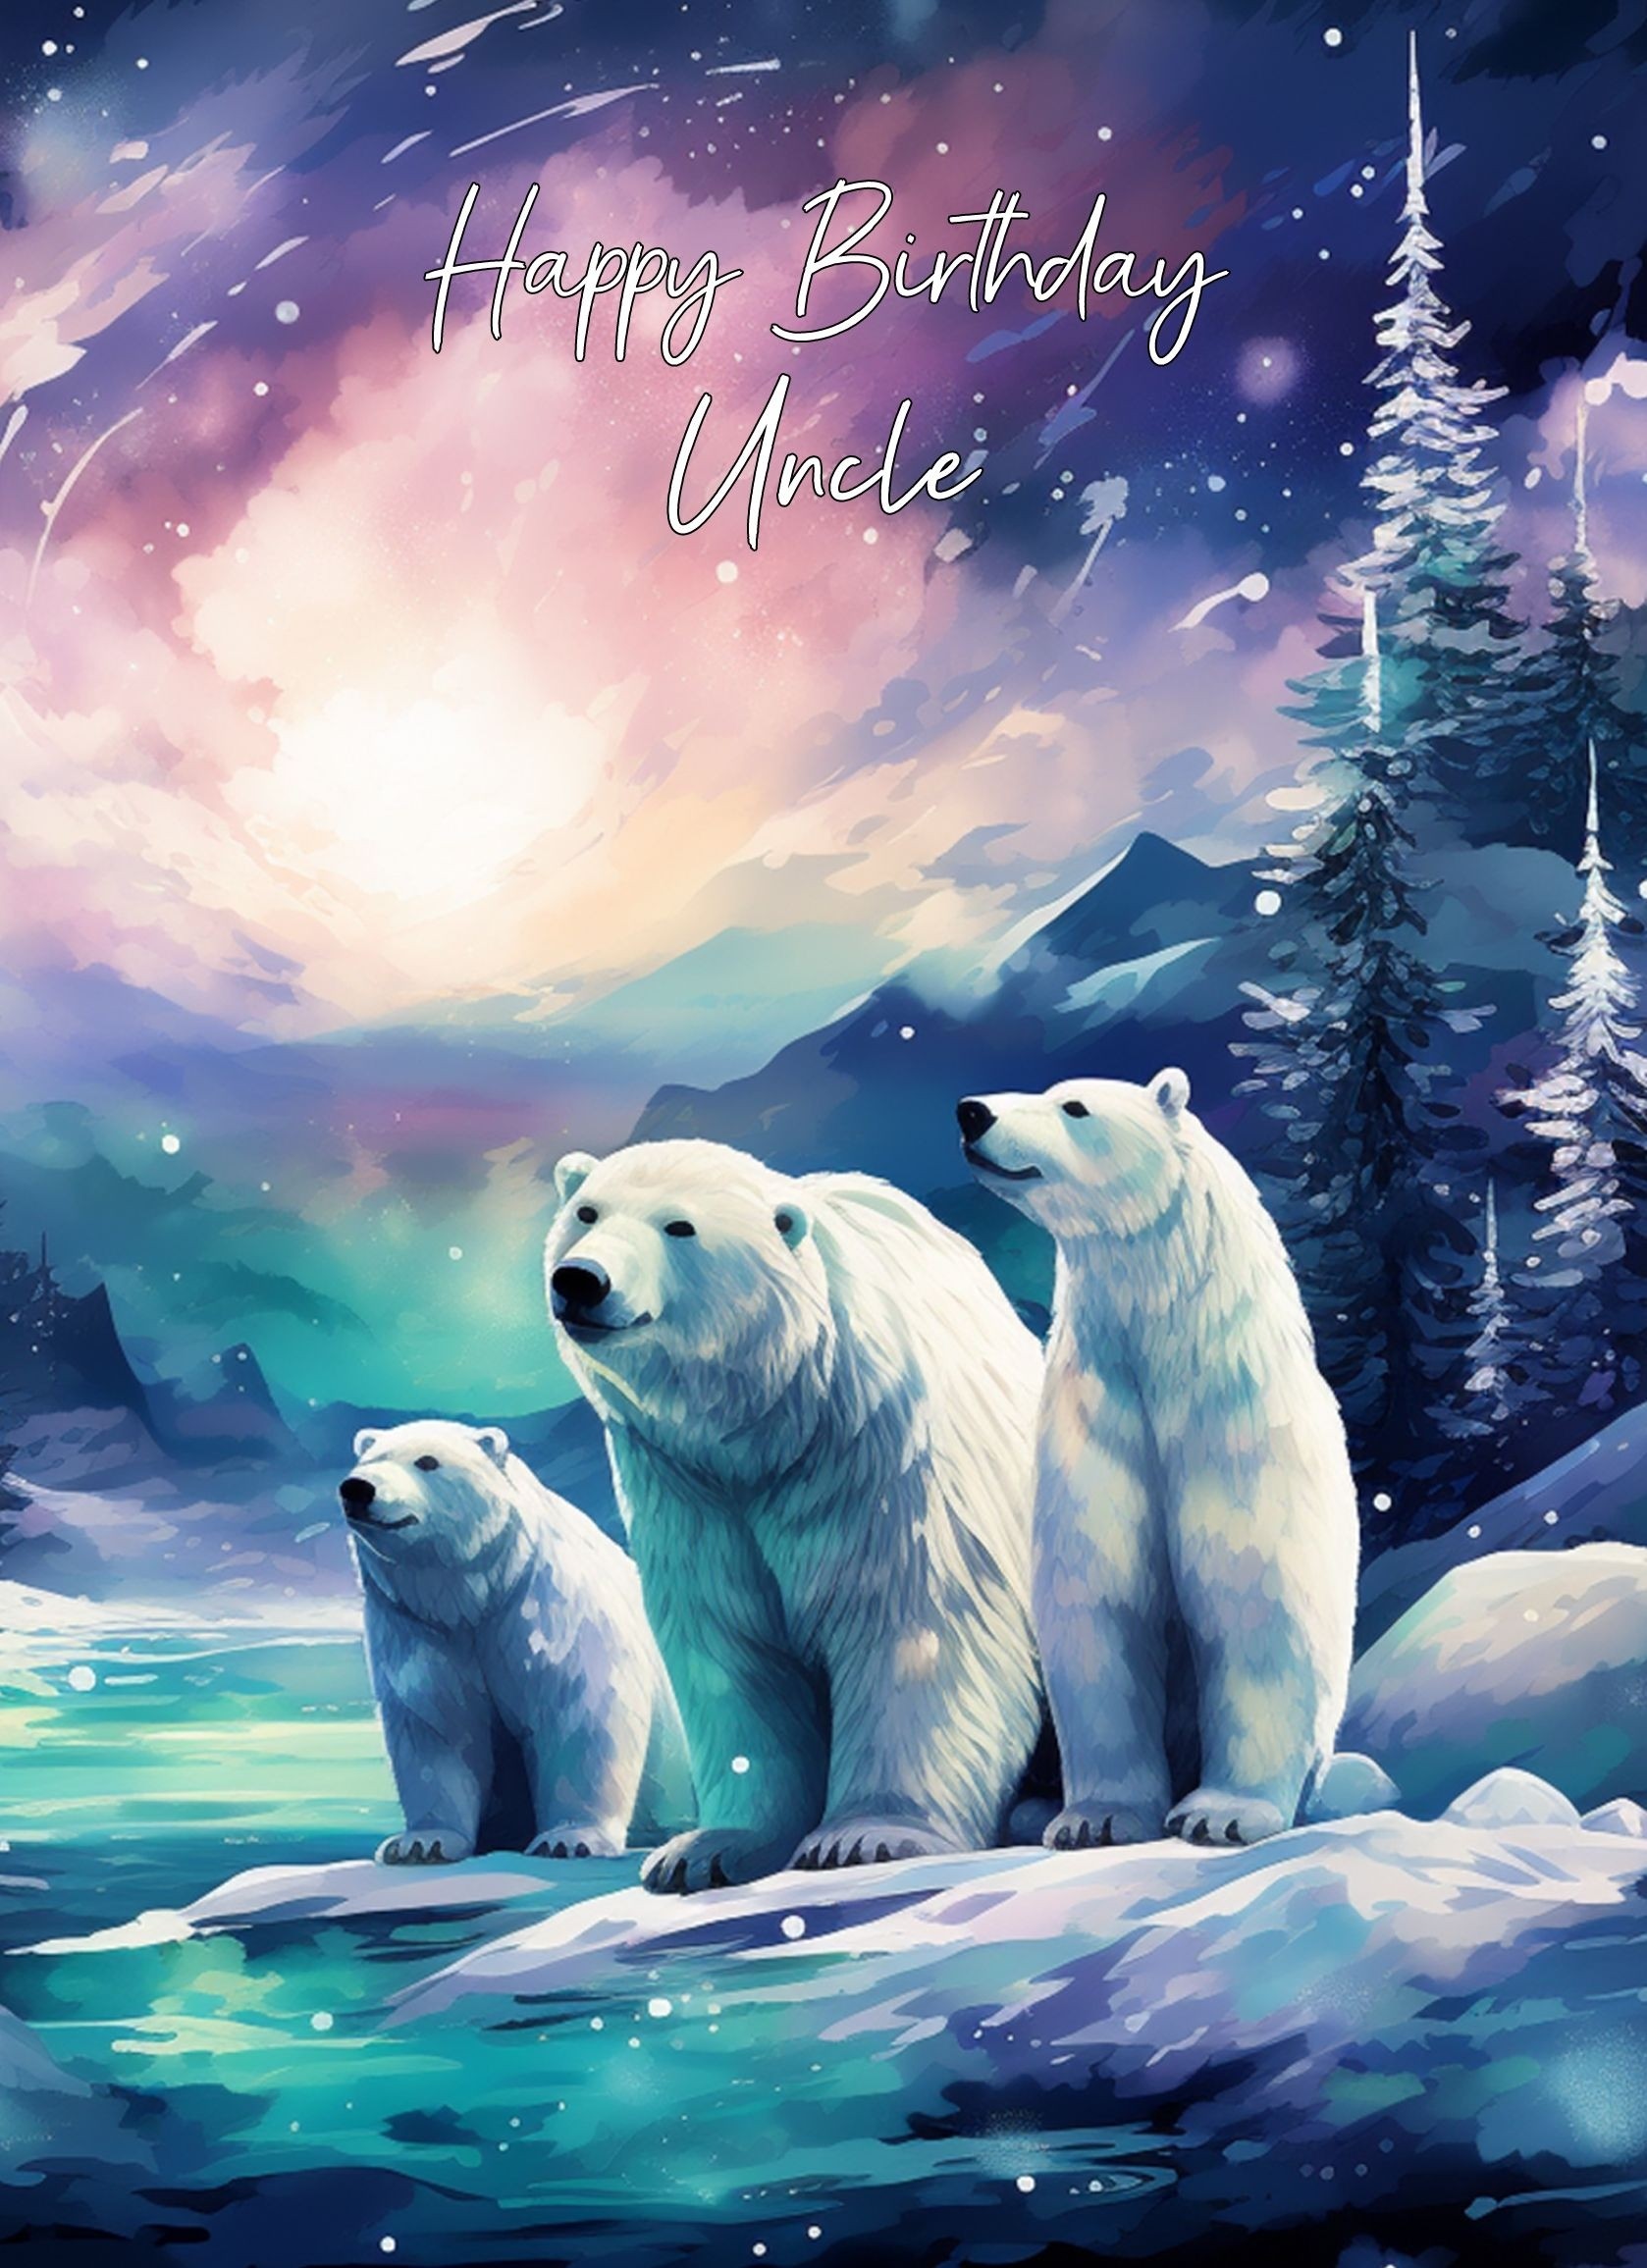 Polar Bear Art Birthday Card For Uncle (Design 1)